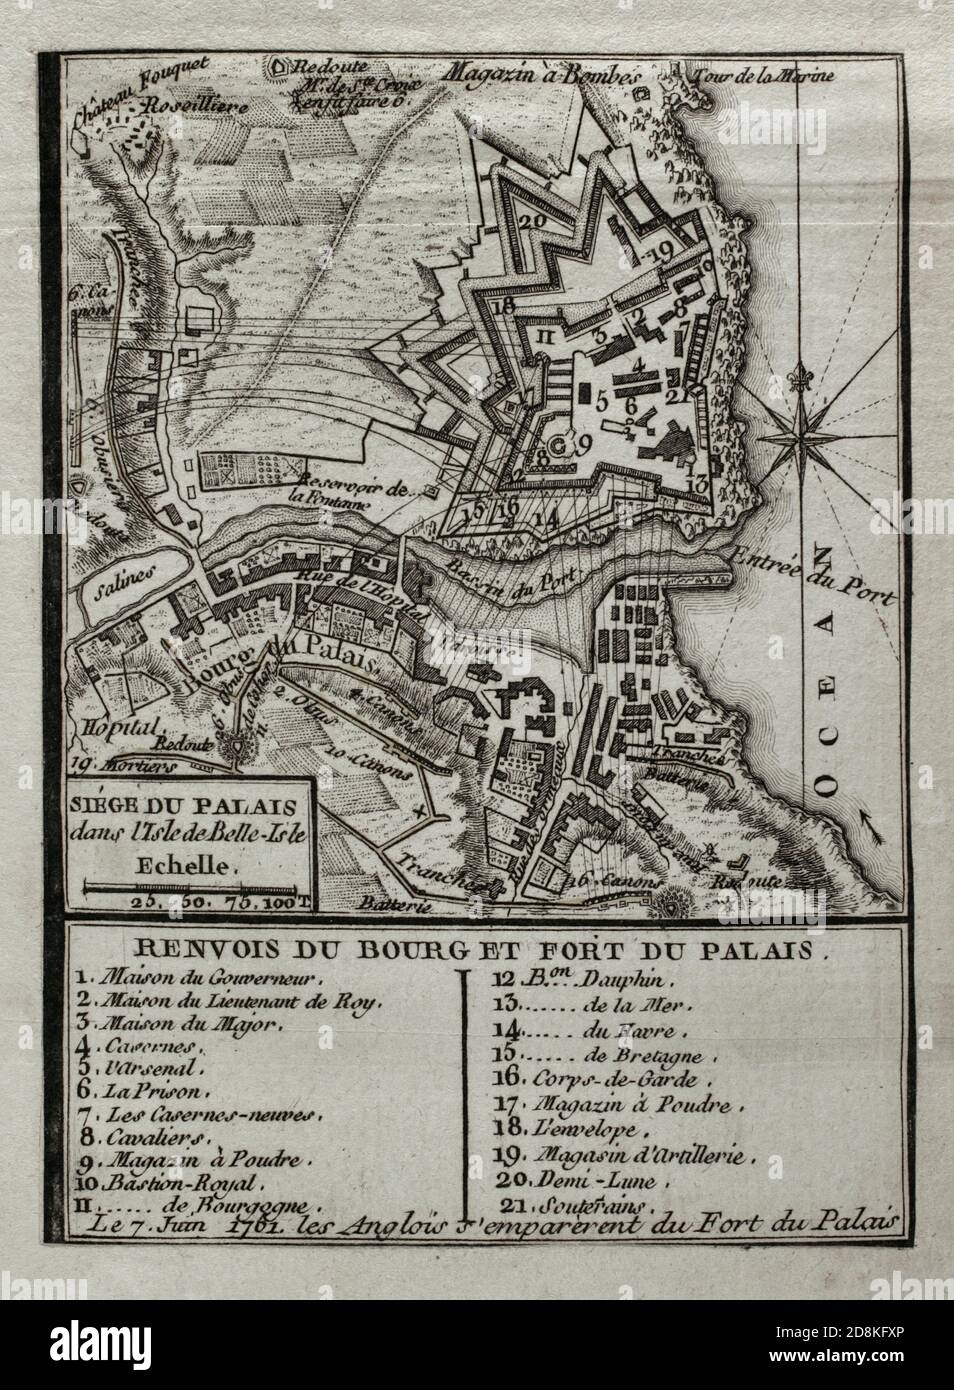 Toma de Belle-Ille o Toma de Belle-Ille-en-Mer (17 de junio de 1761). Los británicos lograron asaltar la ciudadela principal de la isla de la costa atlántica situada frente a la Bretaña. Los hechos acaecieron durante la Guerra de los Siete Años, en el curso de un segundo desembarco por parte de los ingleses al mando del General Studholme Hodgson y posterior asedio de la fortaleza durante seis semanas. Grabado publicado en 1765 por el cartógrafo Jean de Beaurain (1696-1771) como ilustración de su Gran Mapa de Alemania, con los eventos que tuvieron lugar durante la Guerra de los Siete Años. Gut Stockfoto